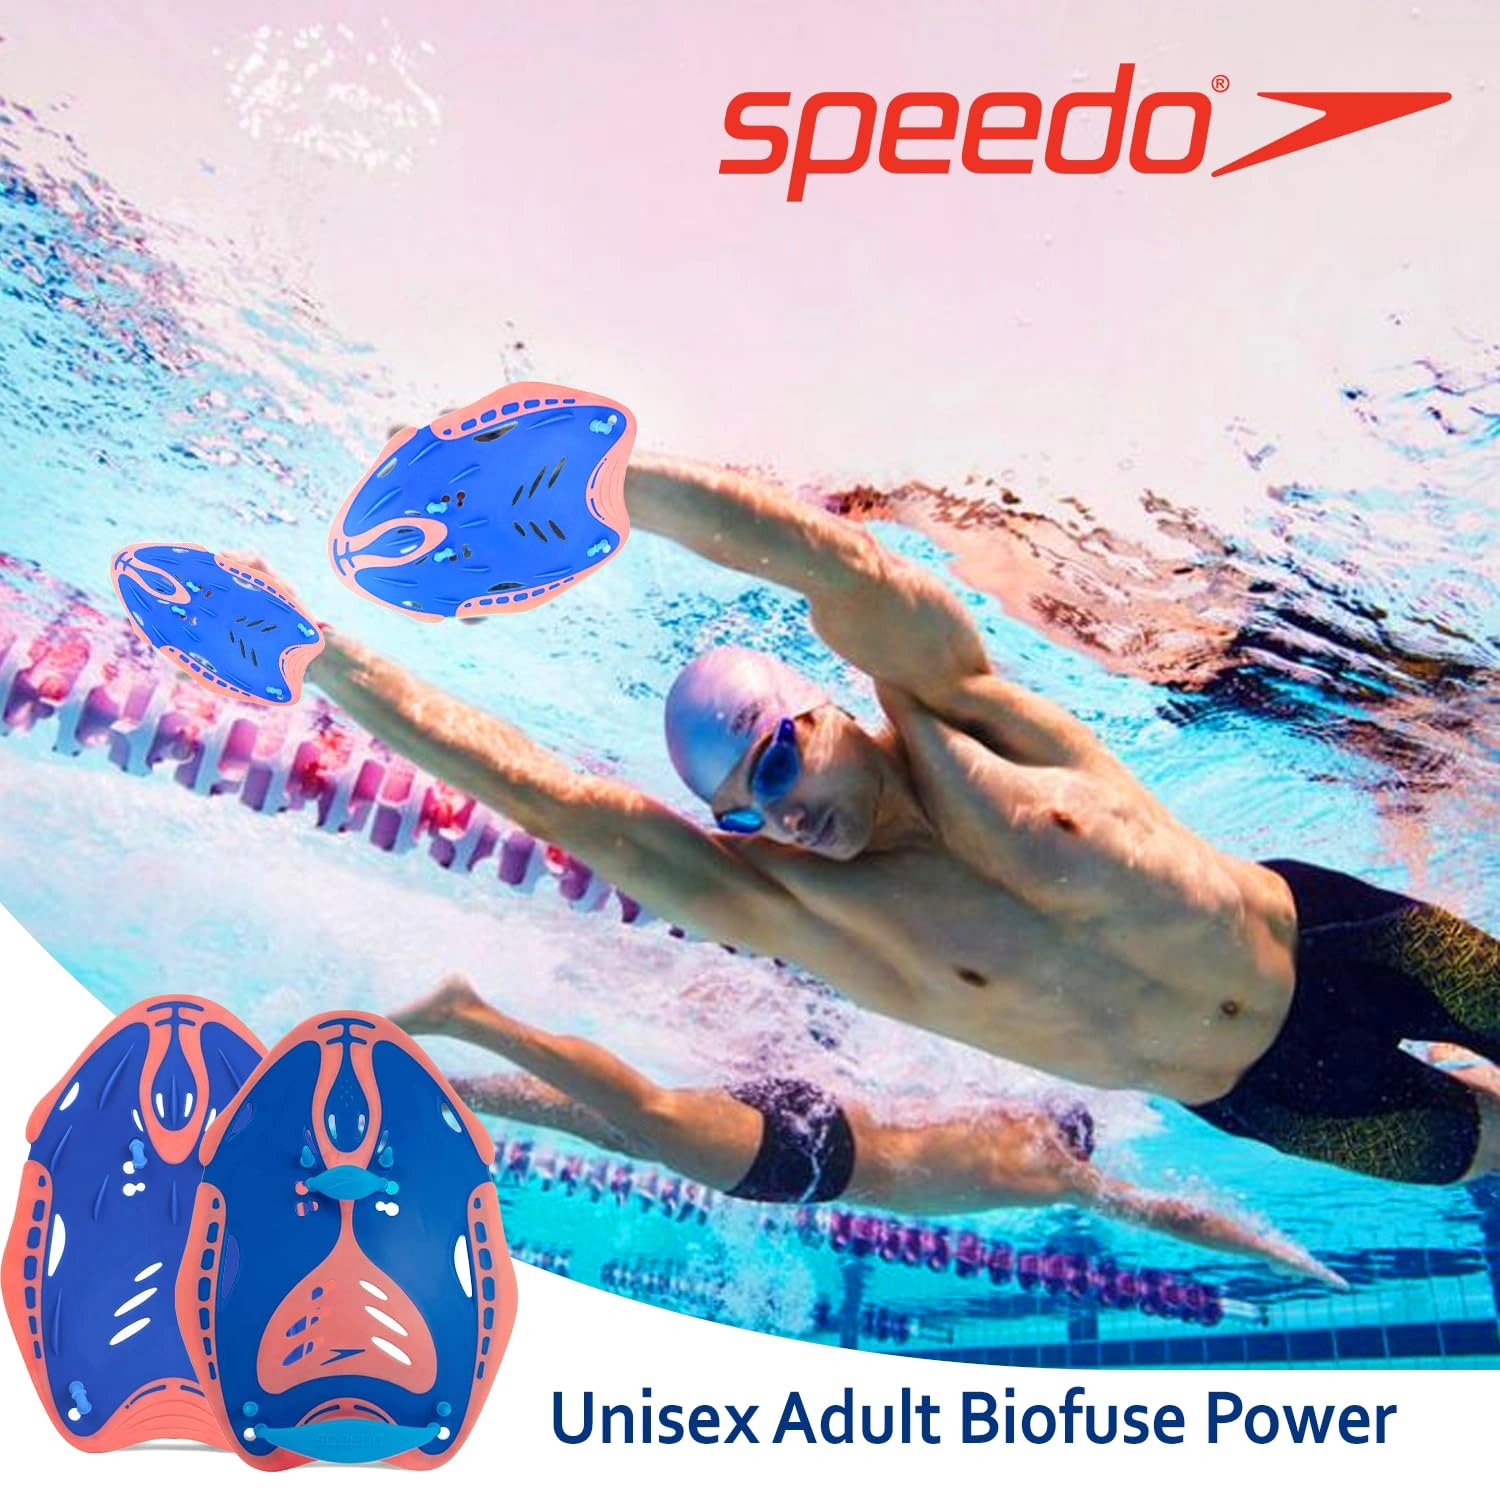 Speedo Biofuse Power Paddle, Training Aids, Unisex Adult-BLUE/ORANGE-M-4